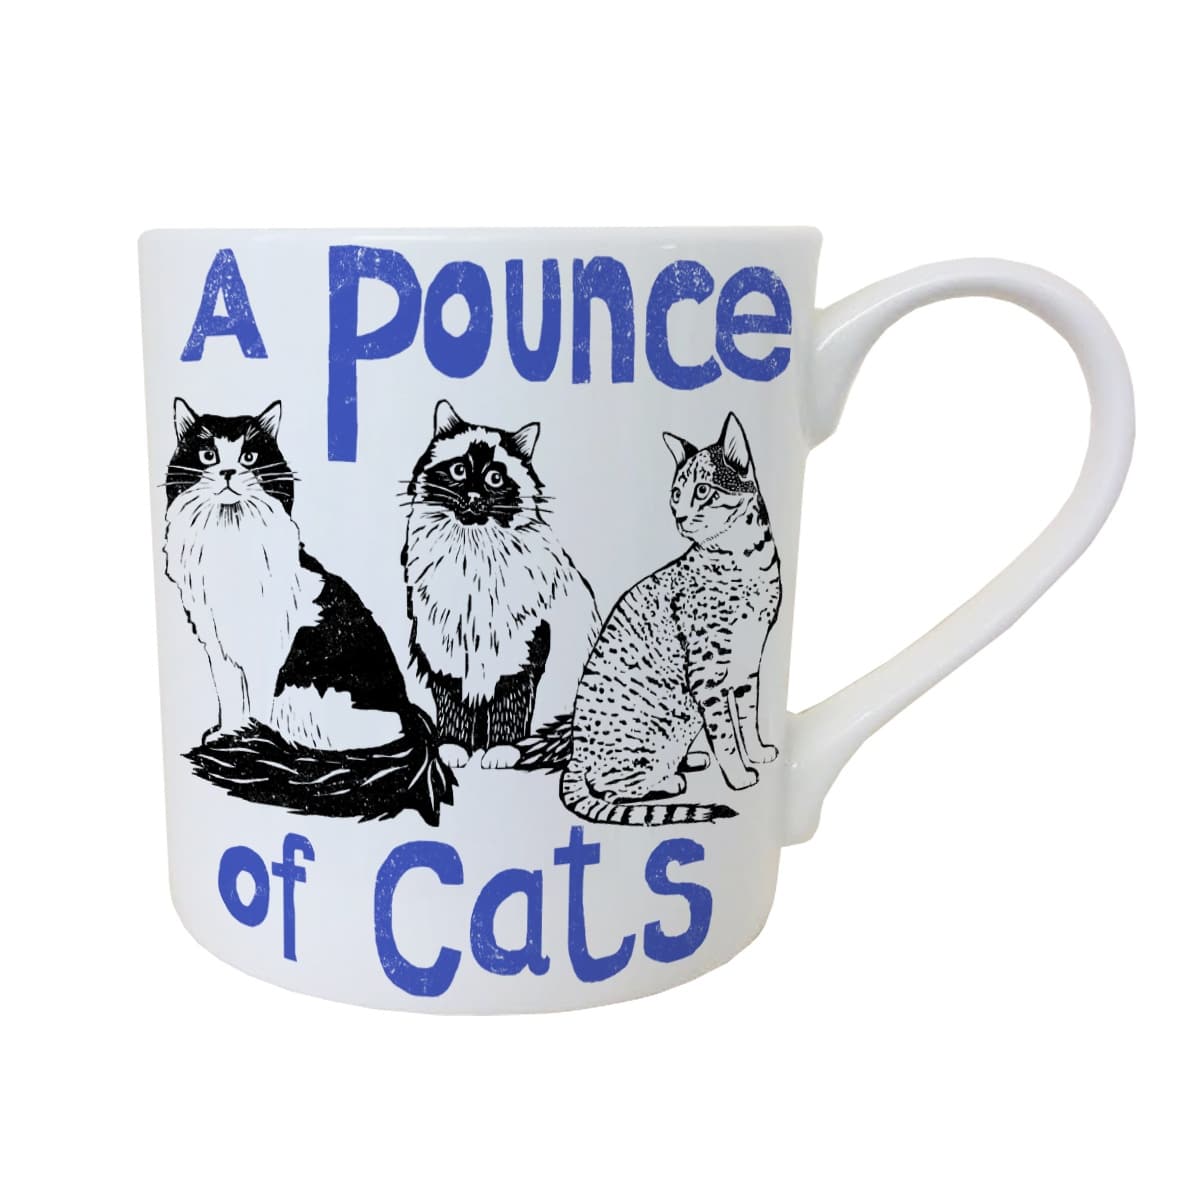 Pounce of Cats mug